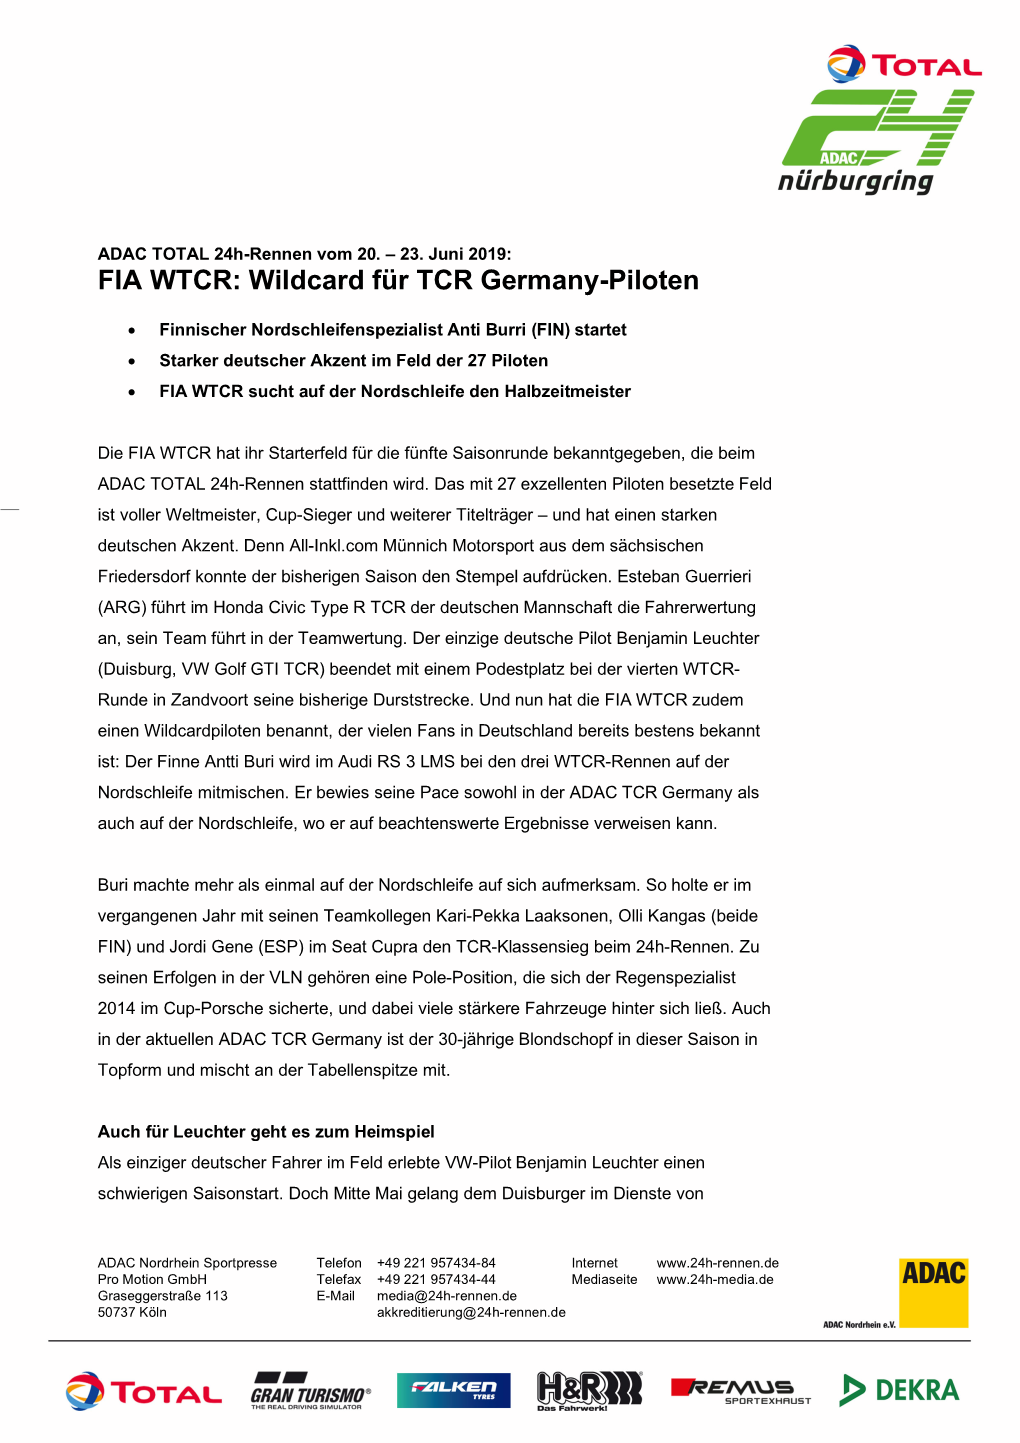 FIA WTCR: Wildcard Für TCR Germany-Piloten